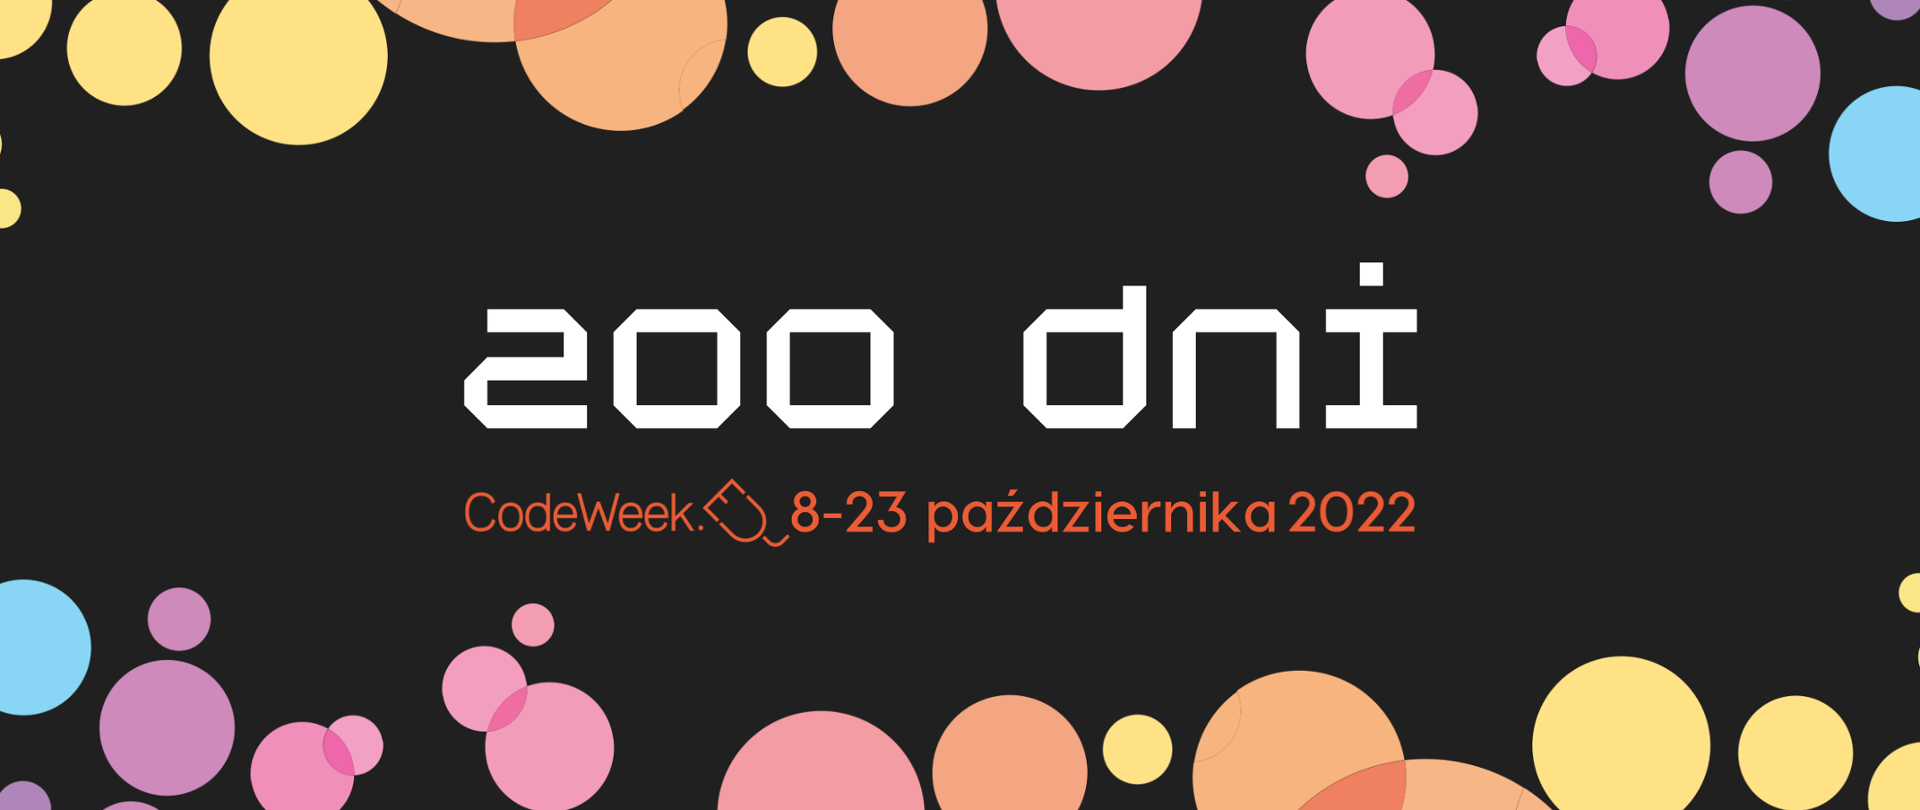 Charakterystyczne kolorowe koła CodeWeek na czarnym tle. Na środki napis "200 dni. CodeWeek 8-23 października 2022"